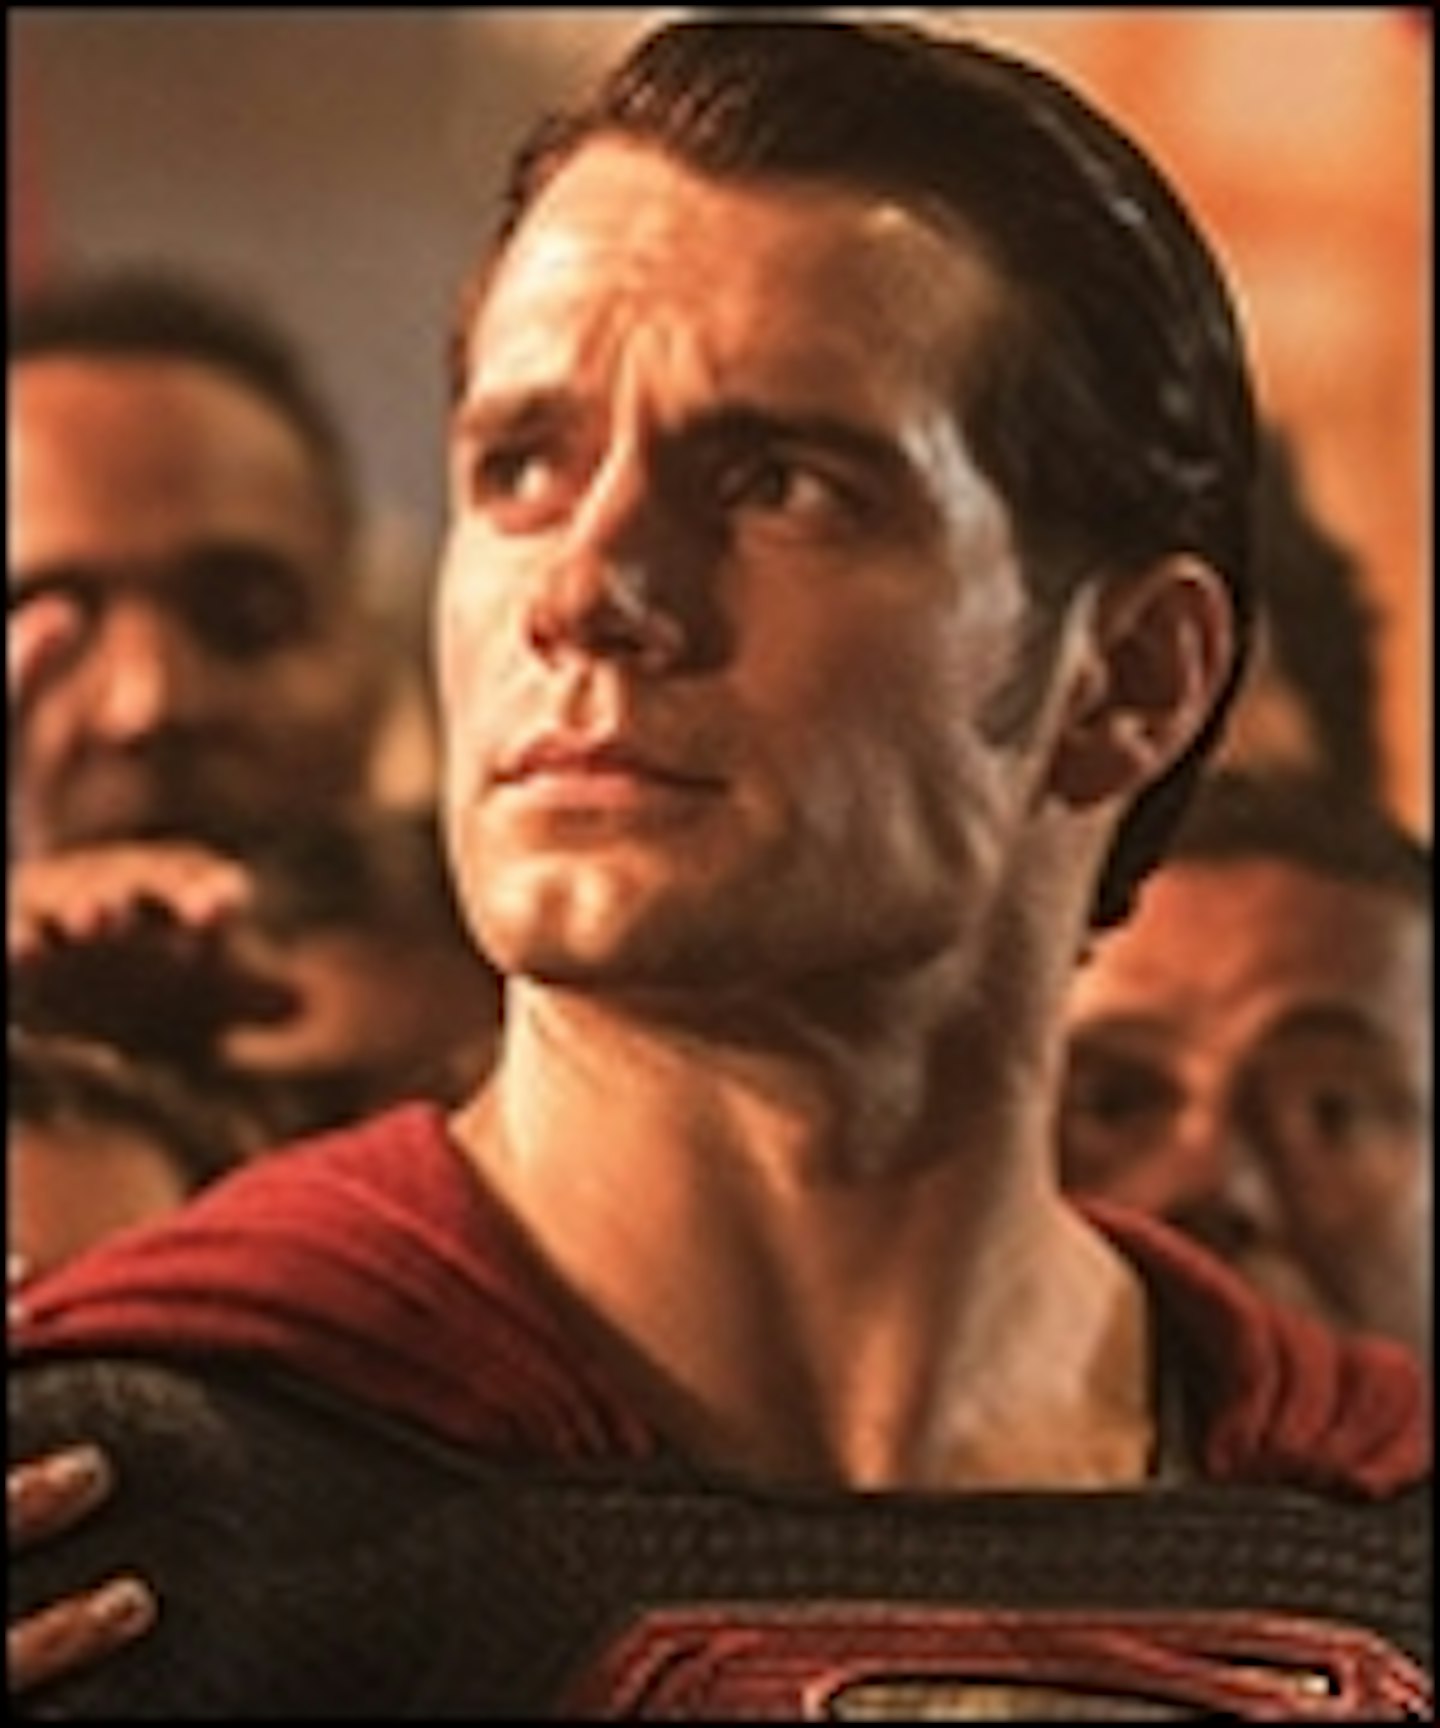 New Batman V Superman: Dawn Of Justice Images